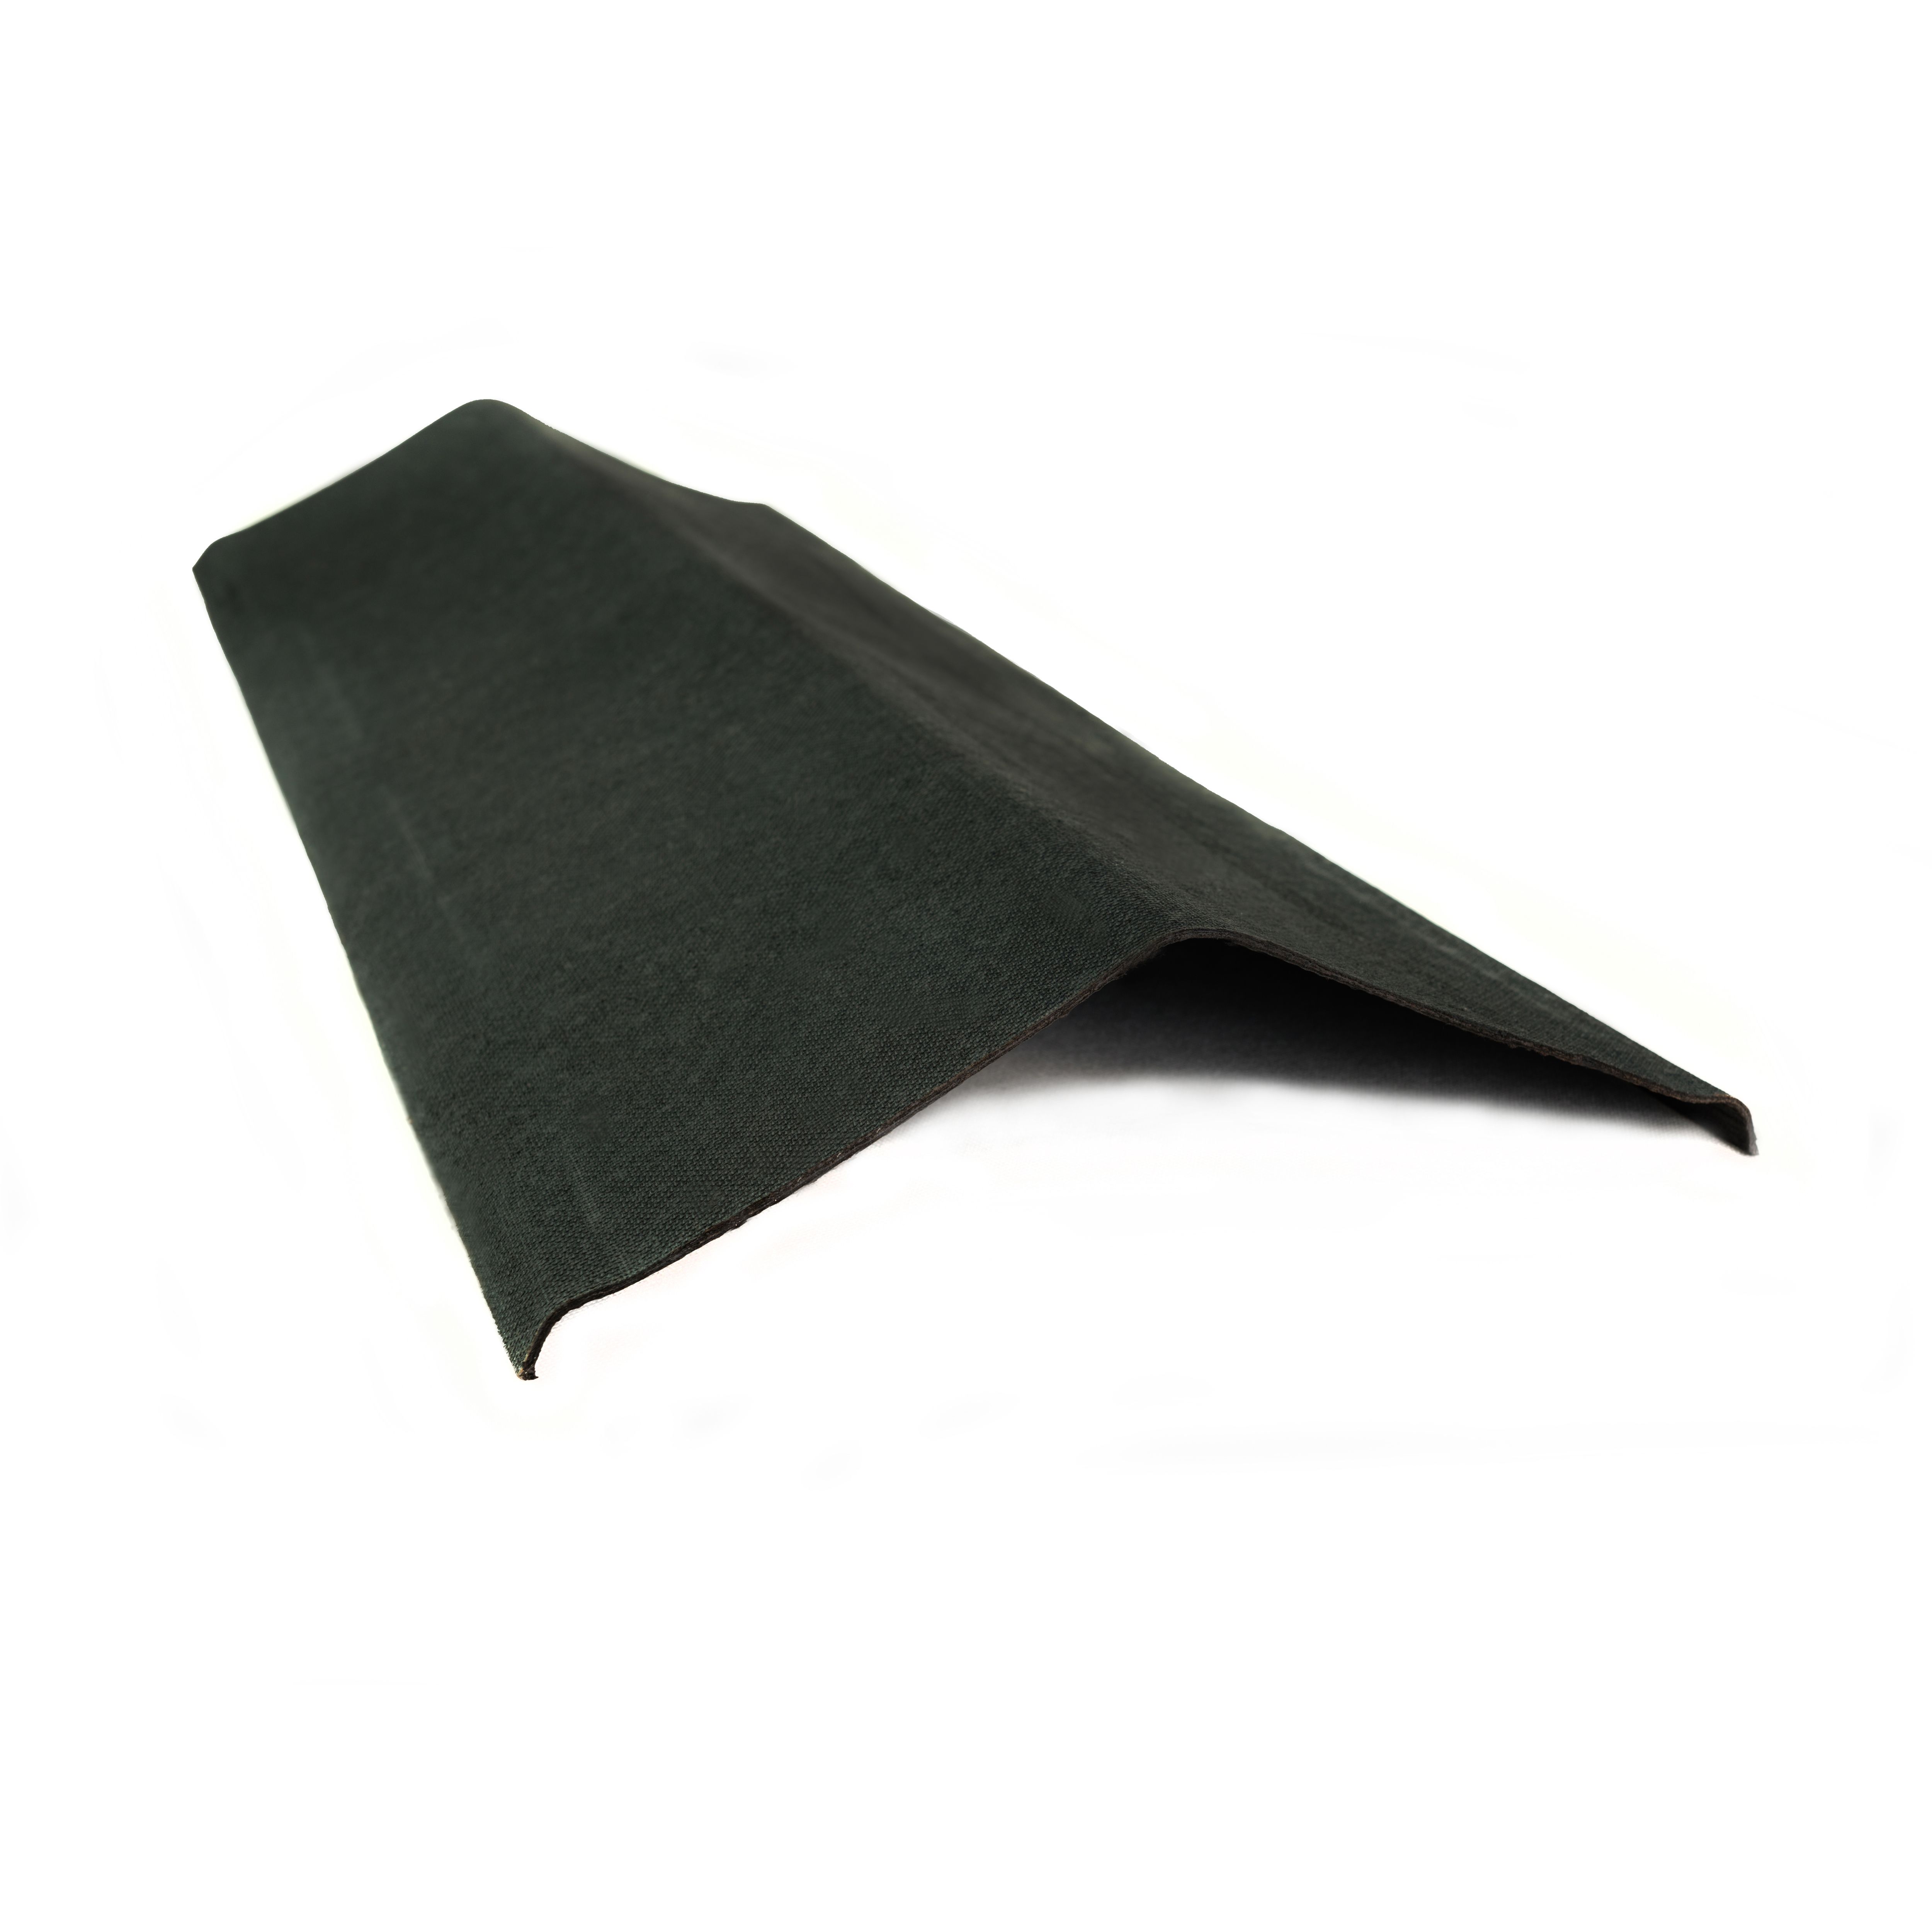 Onduline Black Bitumen Edge piece, (L)1m (W)310mm (T)3mm